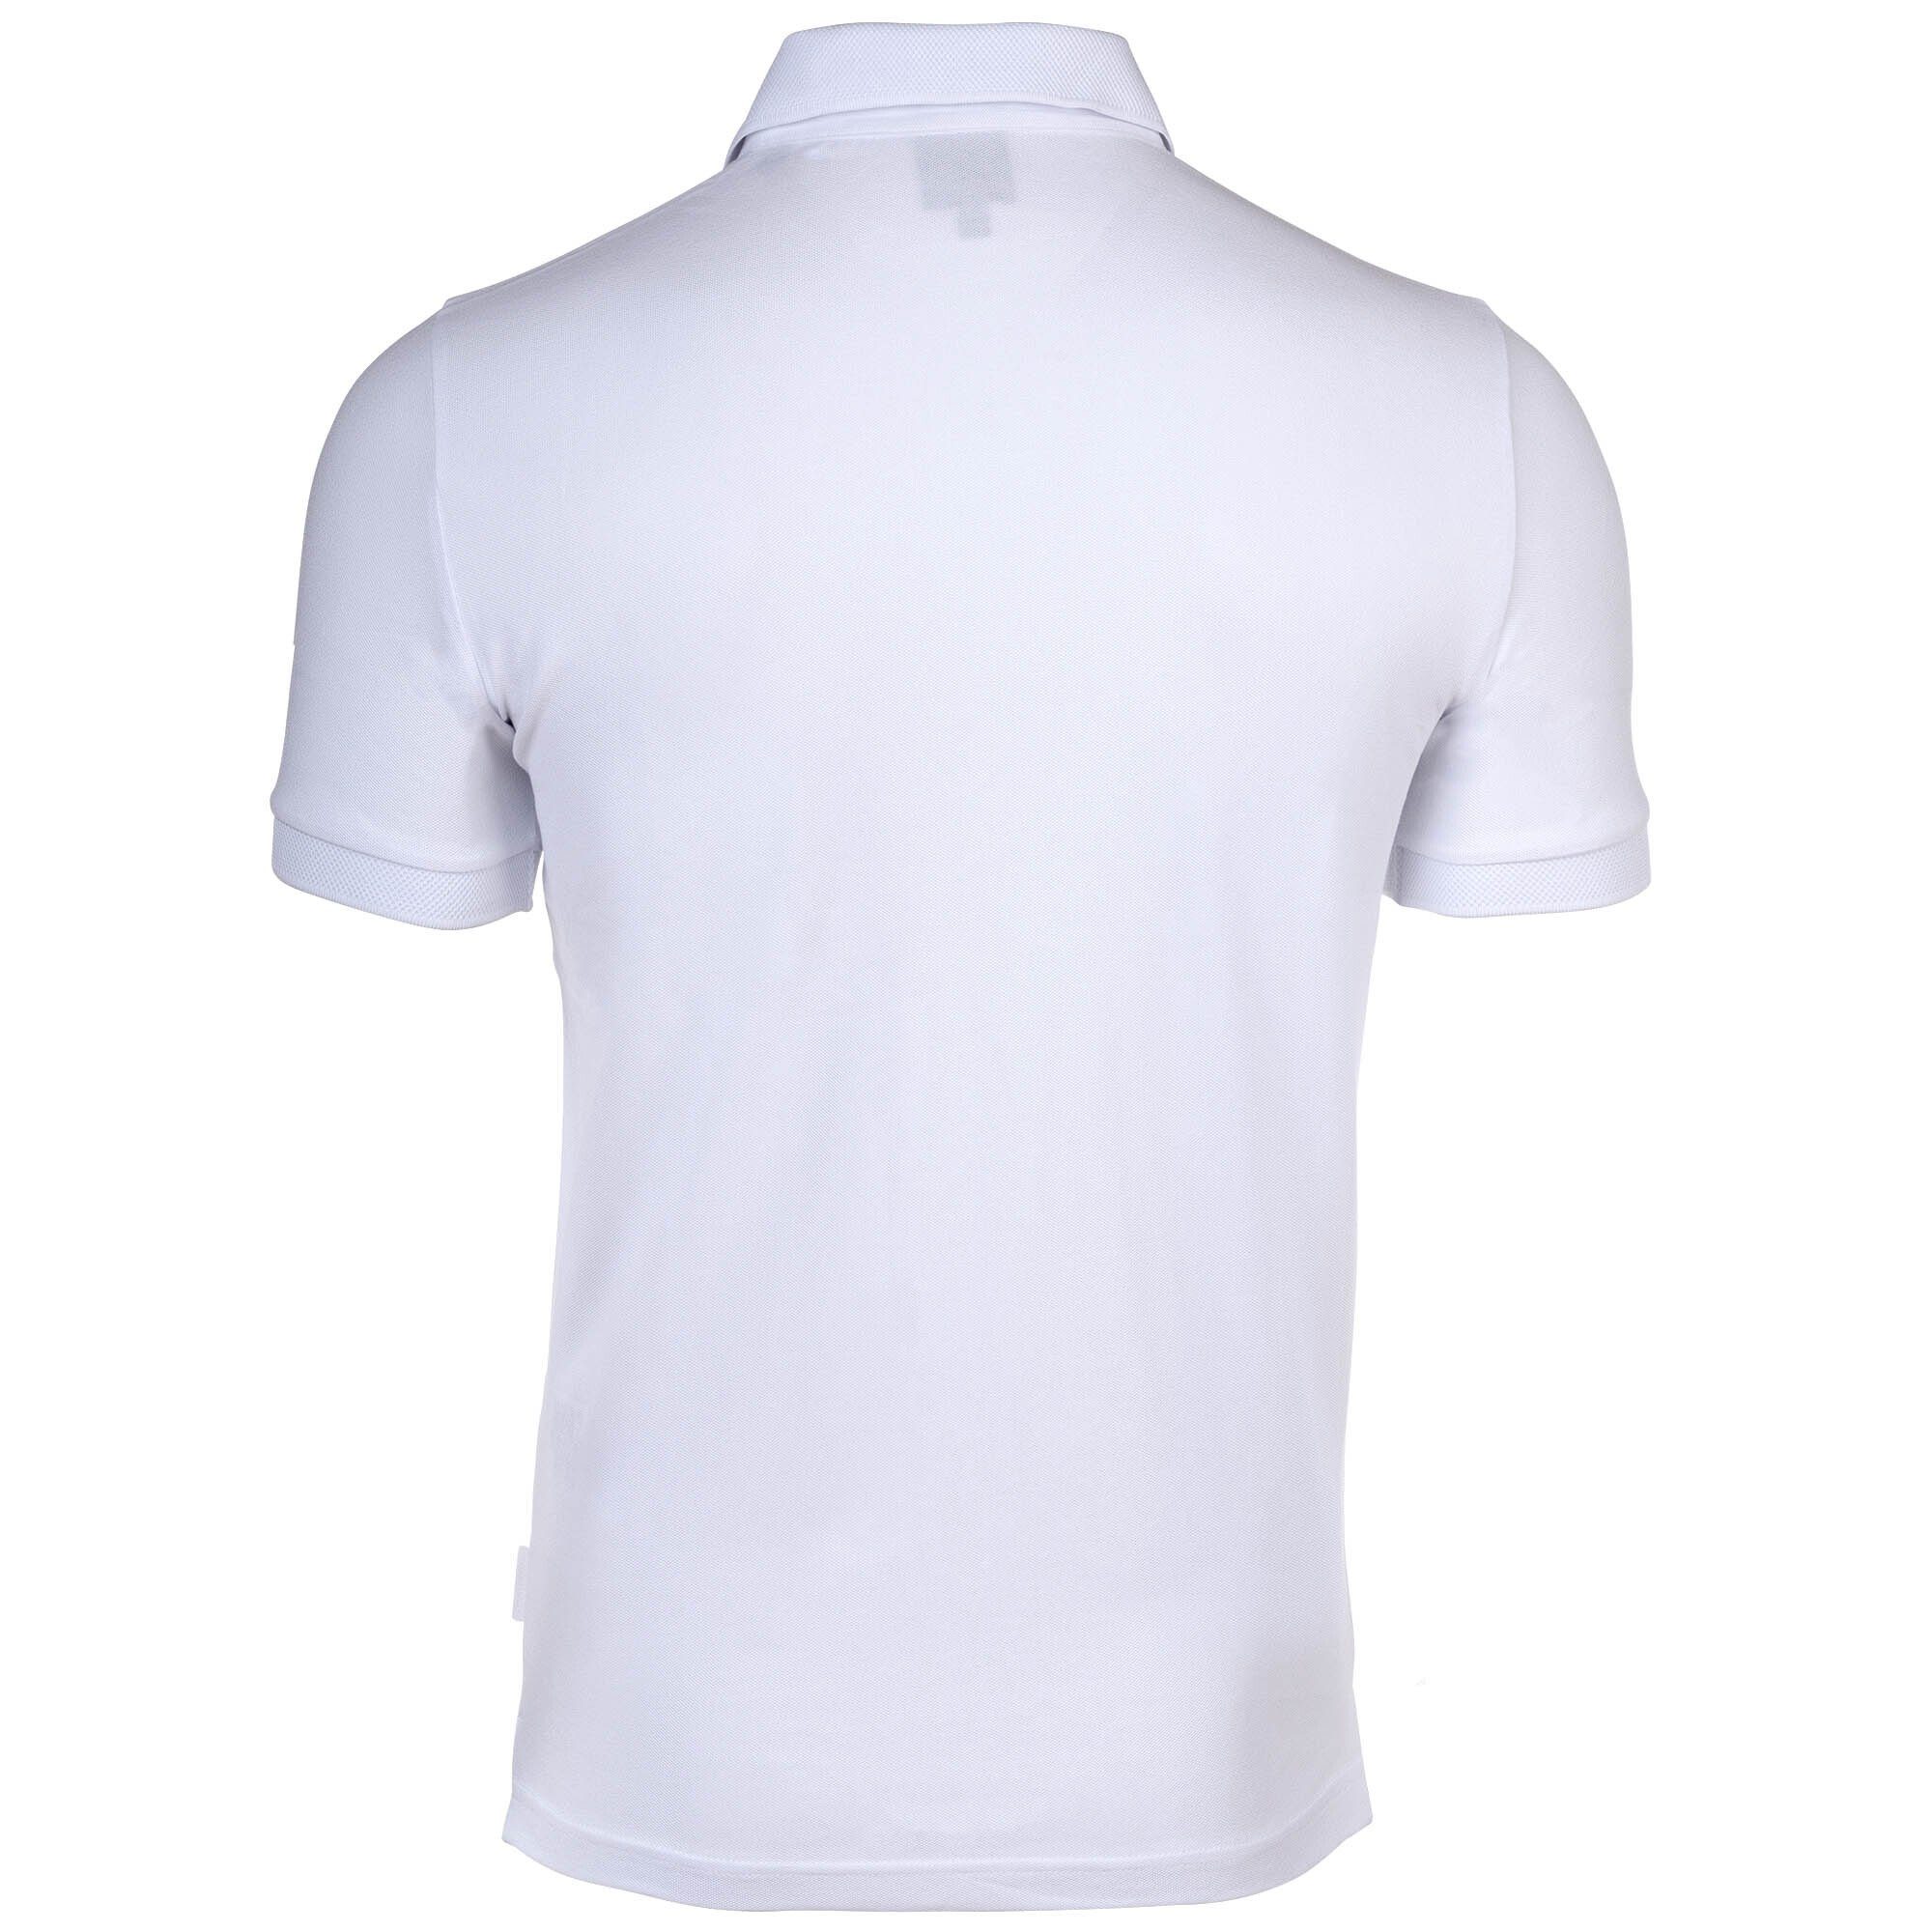 - Cotton Poloshirt ARMANI Poloshirt fit, Weiß EXCHANGE Herren Slim einfarbig,